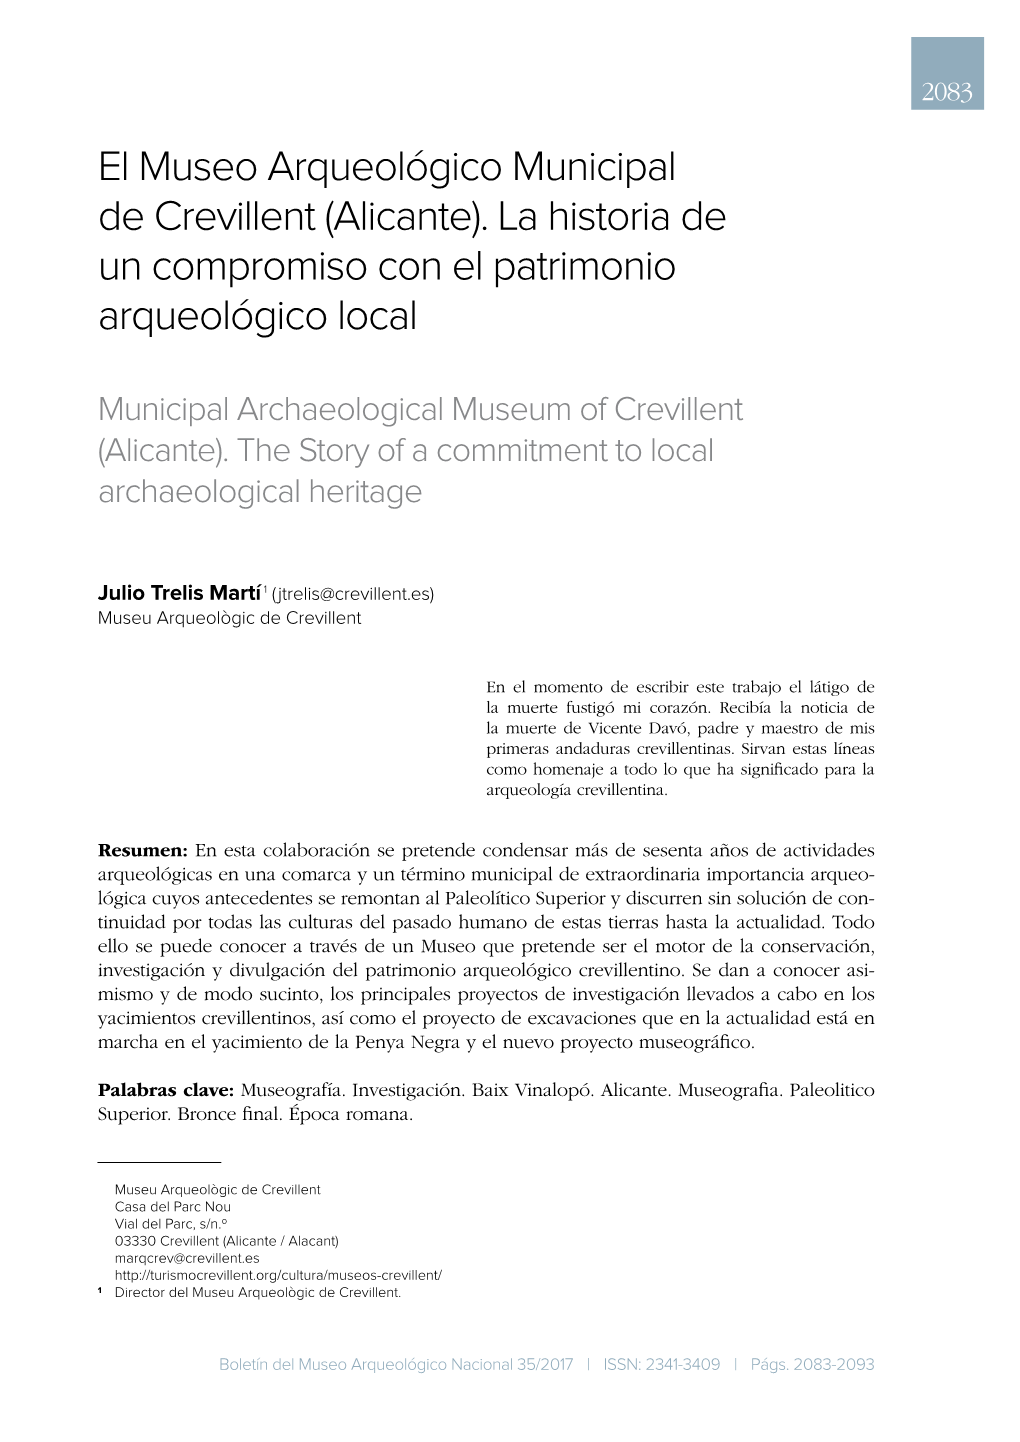 El Museo Arqueológico Municipal De Crevillent (Alicante). La Historia De Un Compromiso Con El Patrimonio Arqueológico Local